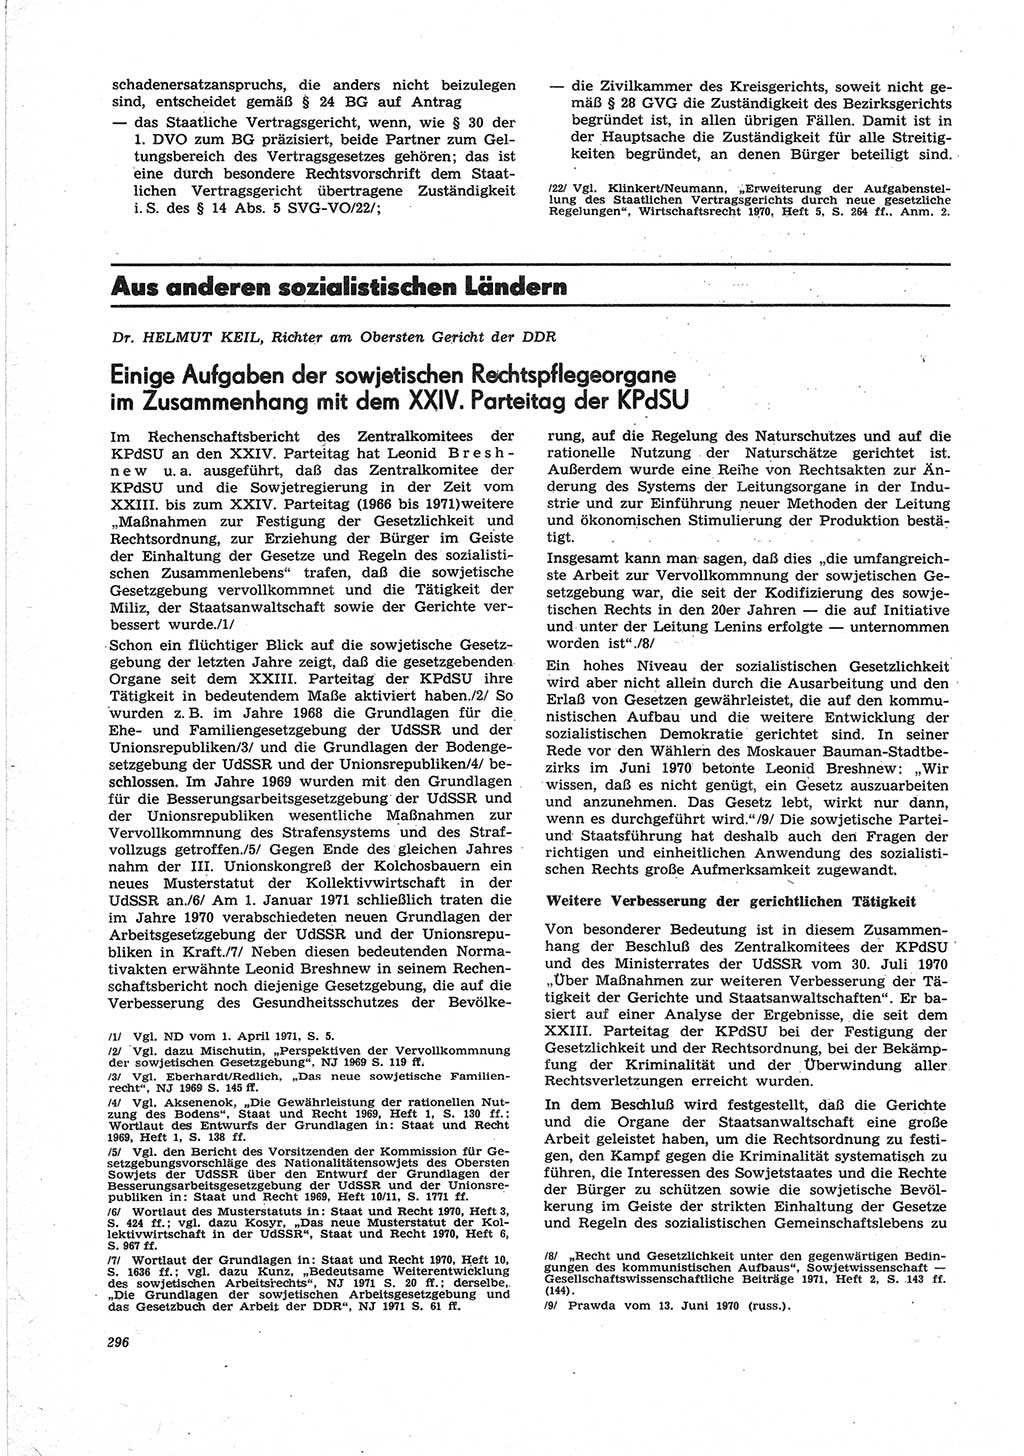 Neue Justiz (NJ), Zeitschrift für Recht und Rechtswissenschaft [Deutsche Demokratische Republik (DDR)], 25. Jahrgang 1971, Seite 296 (NJ DDR 1971, S. 296)